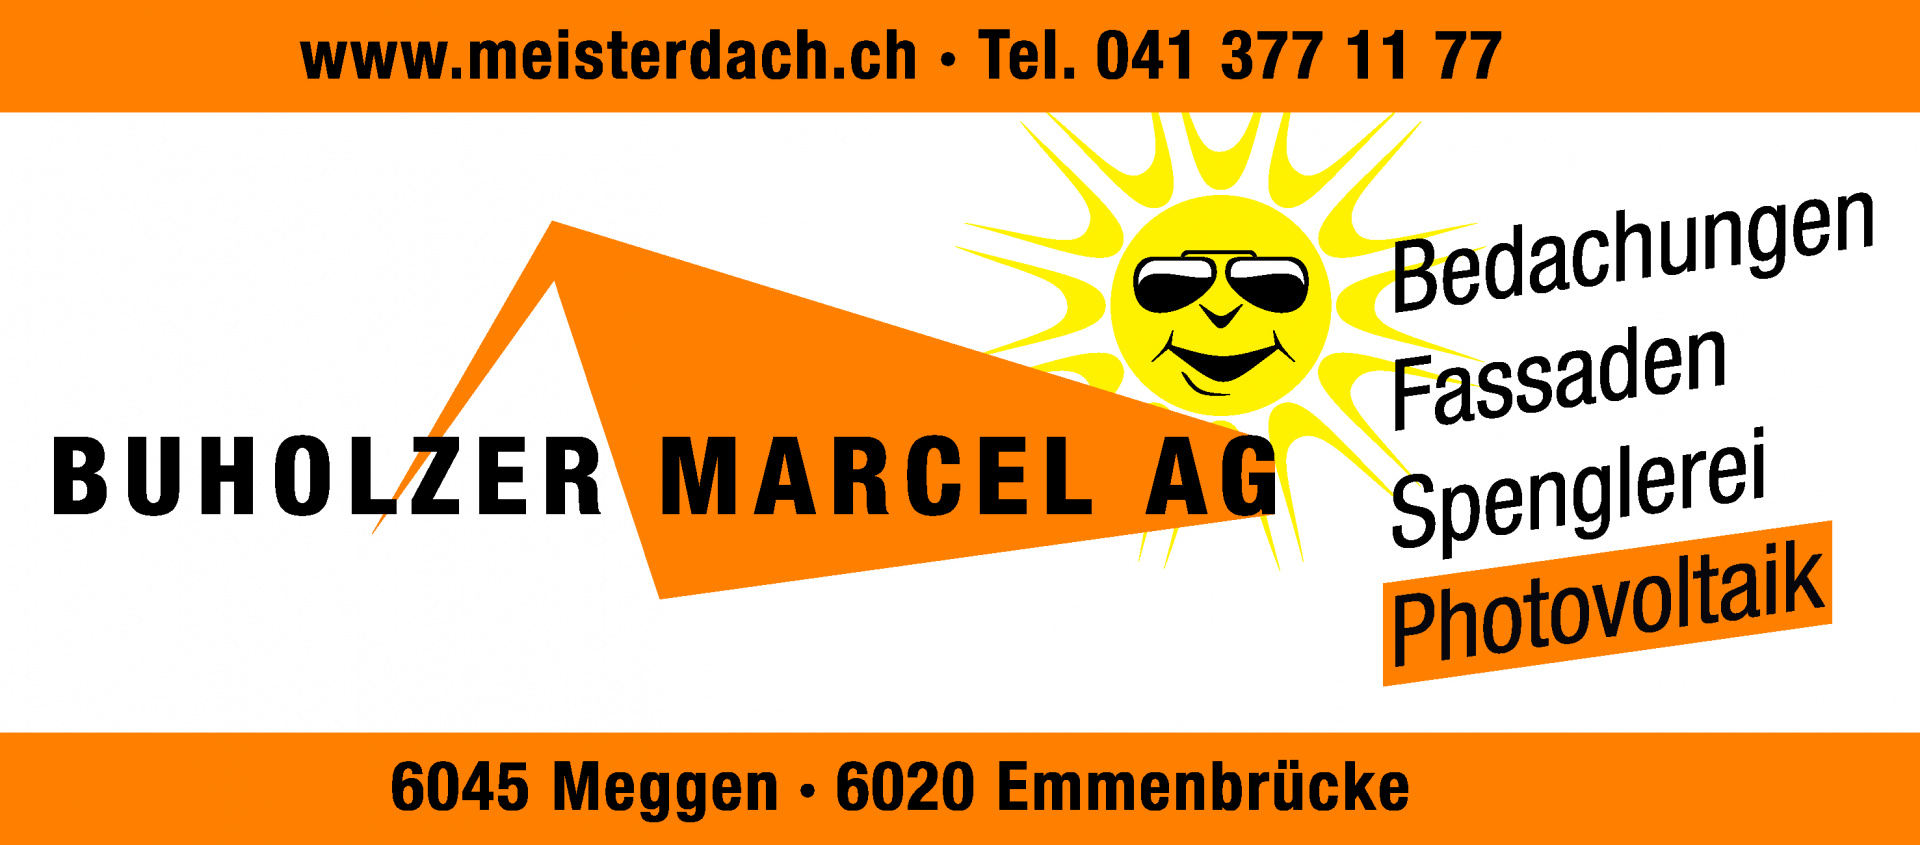 buholzer_marcel_ag_logo_version_4.jpg